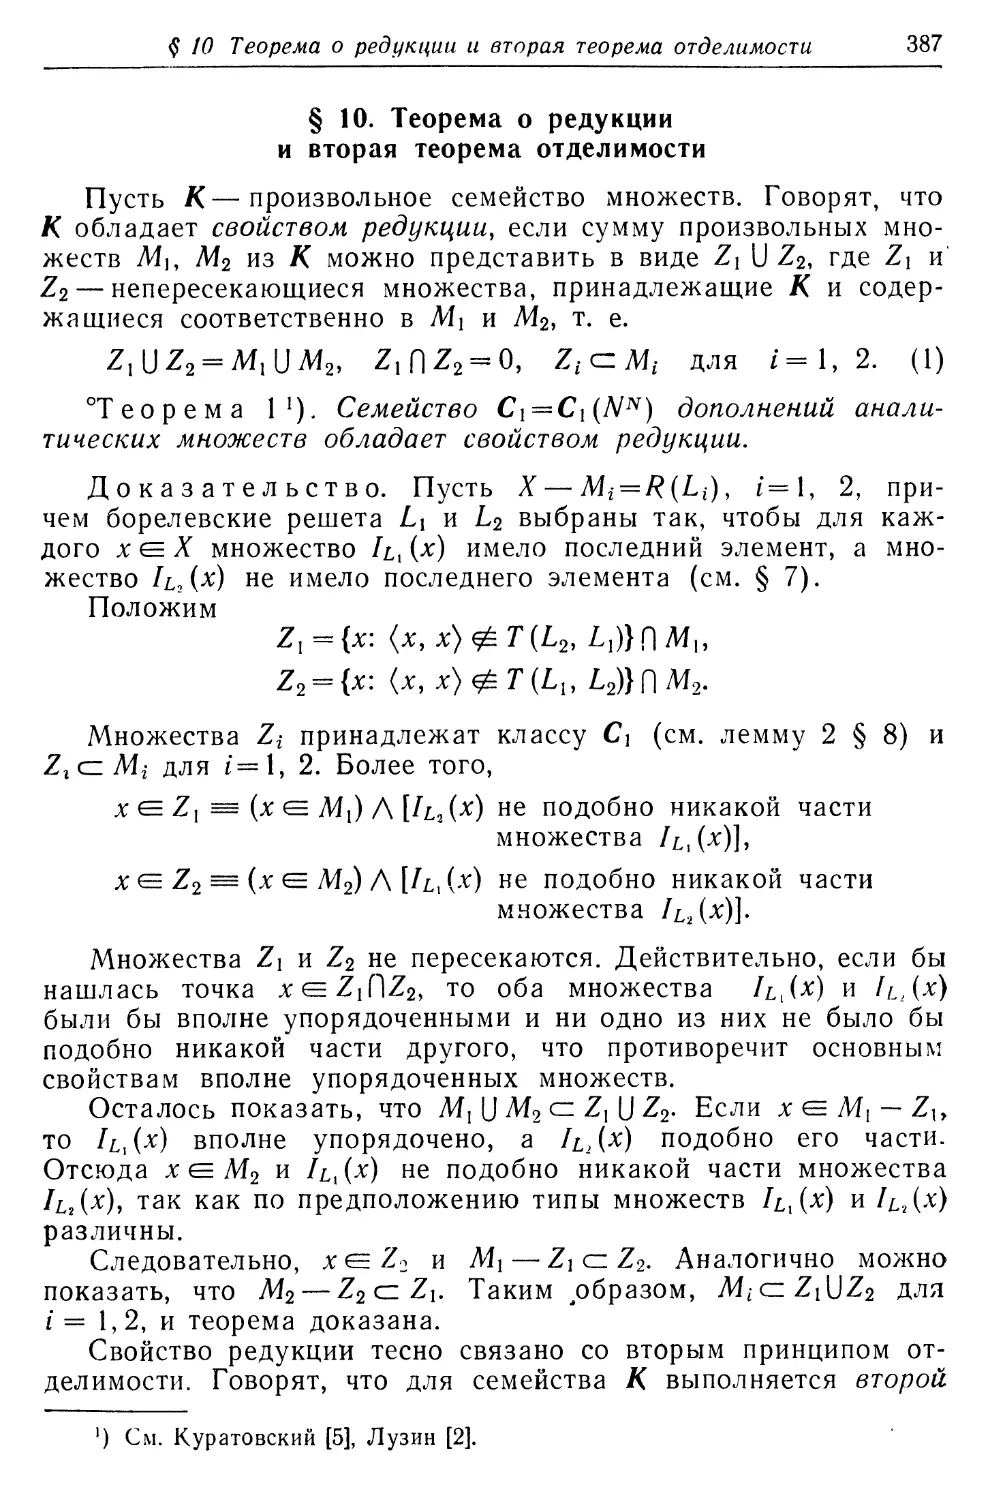 § 10. Теорема о редукции и вторая теорема отделимости